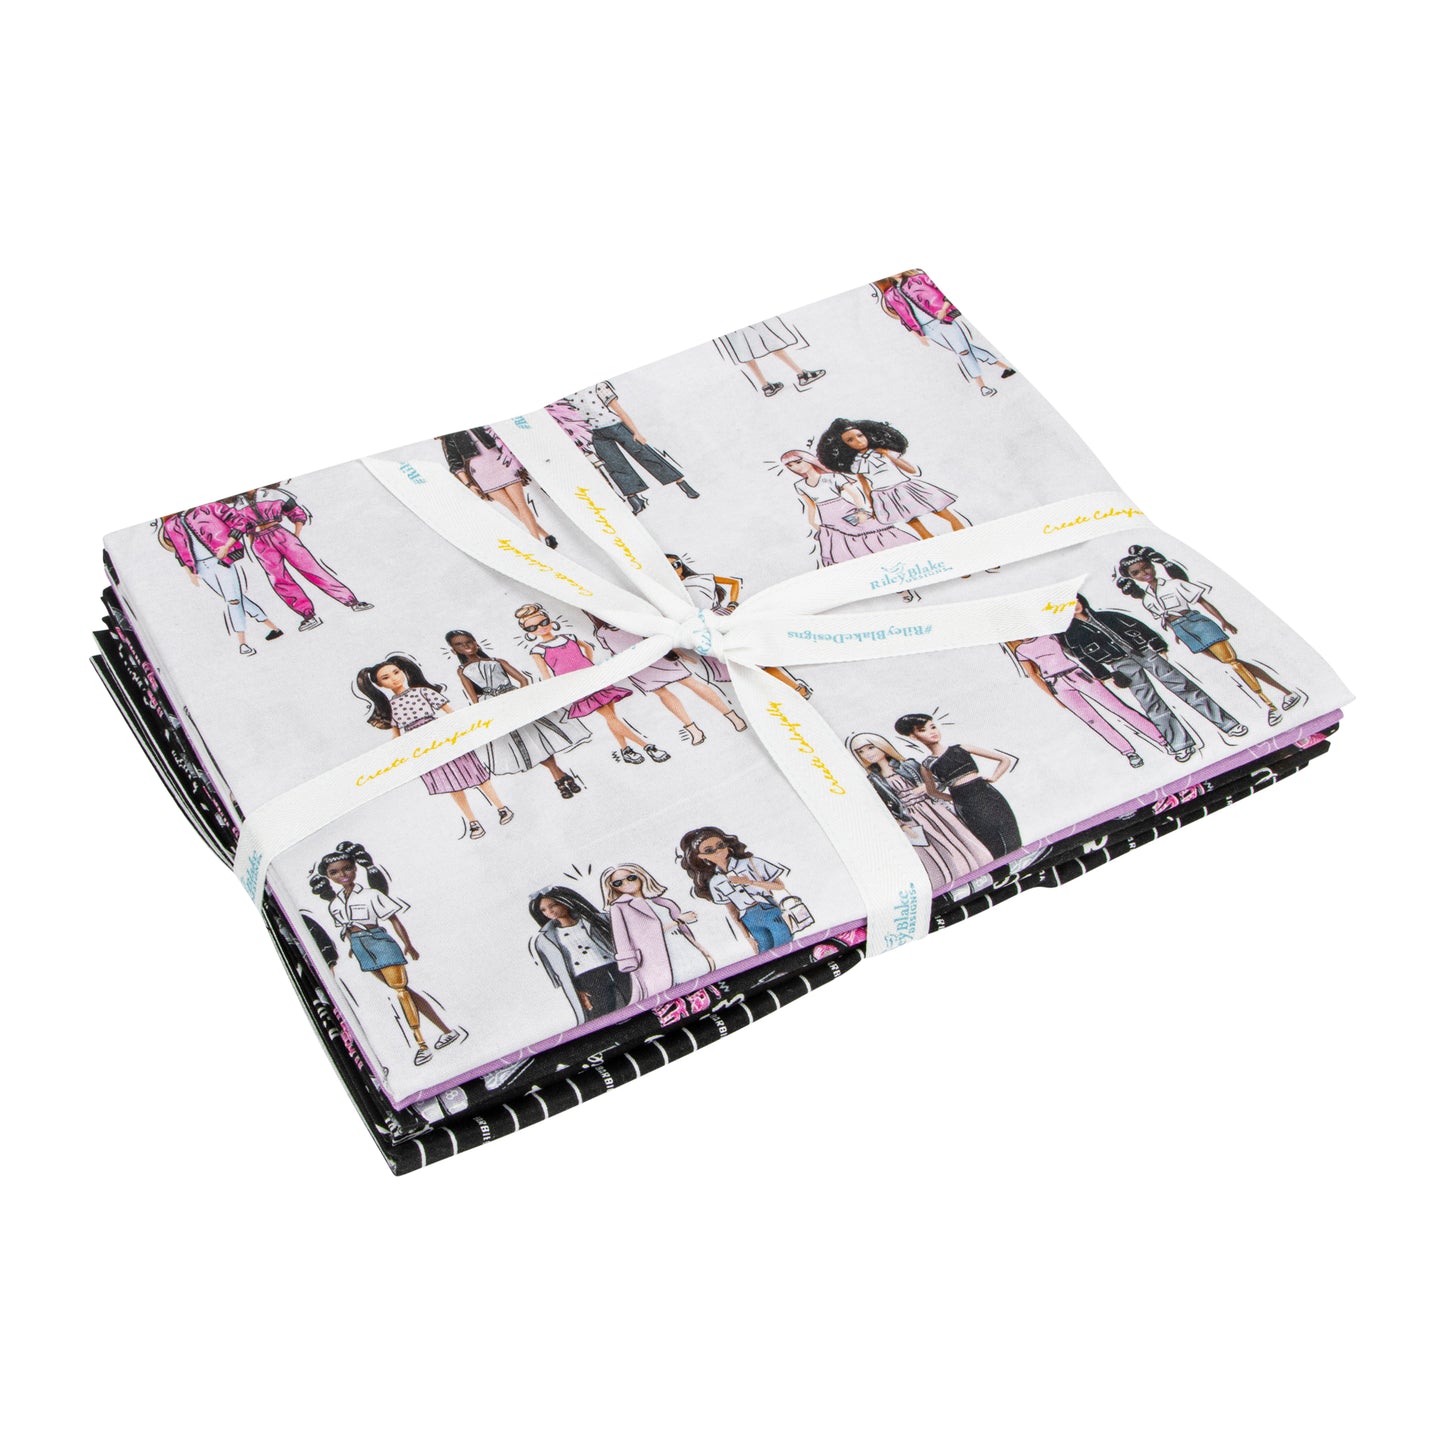 Barbie Girl 5 Yd Fabric Bundle - Barbie Girl Fabrics - Riley Blake Designs 12990W-5